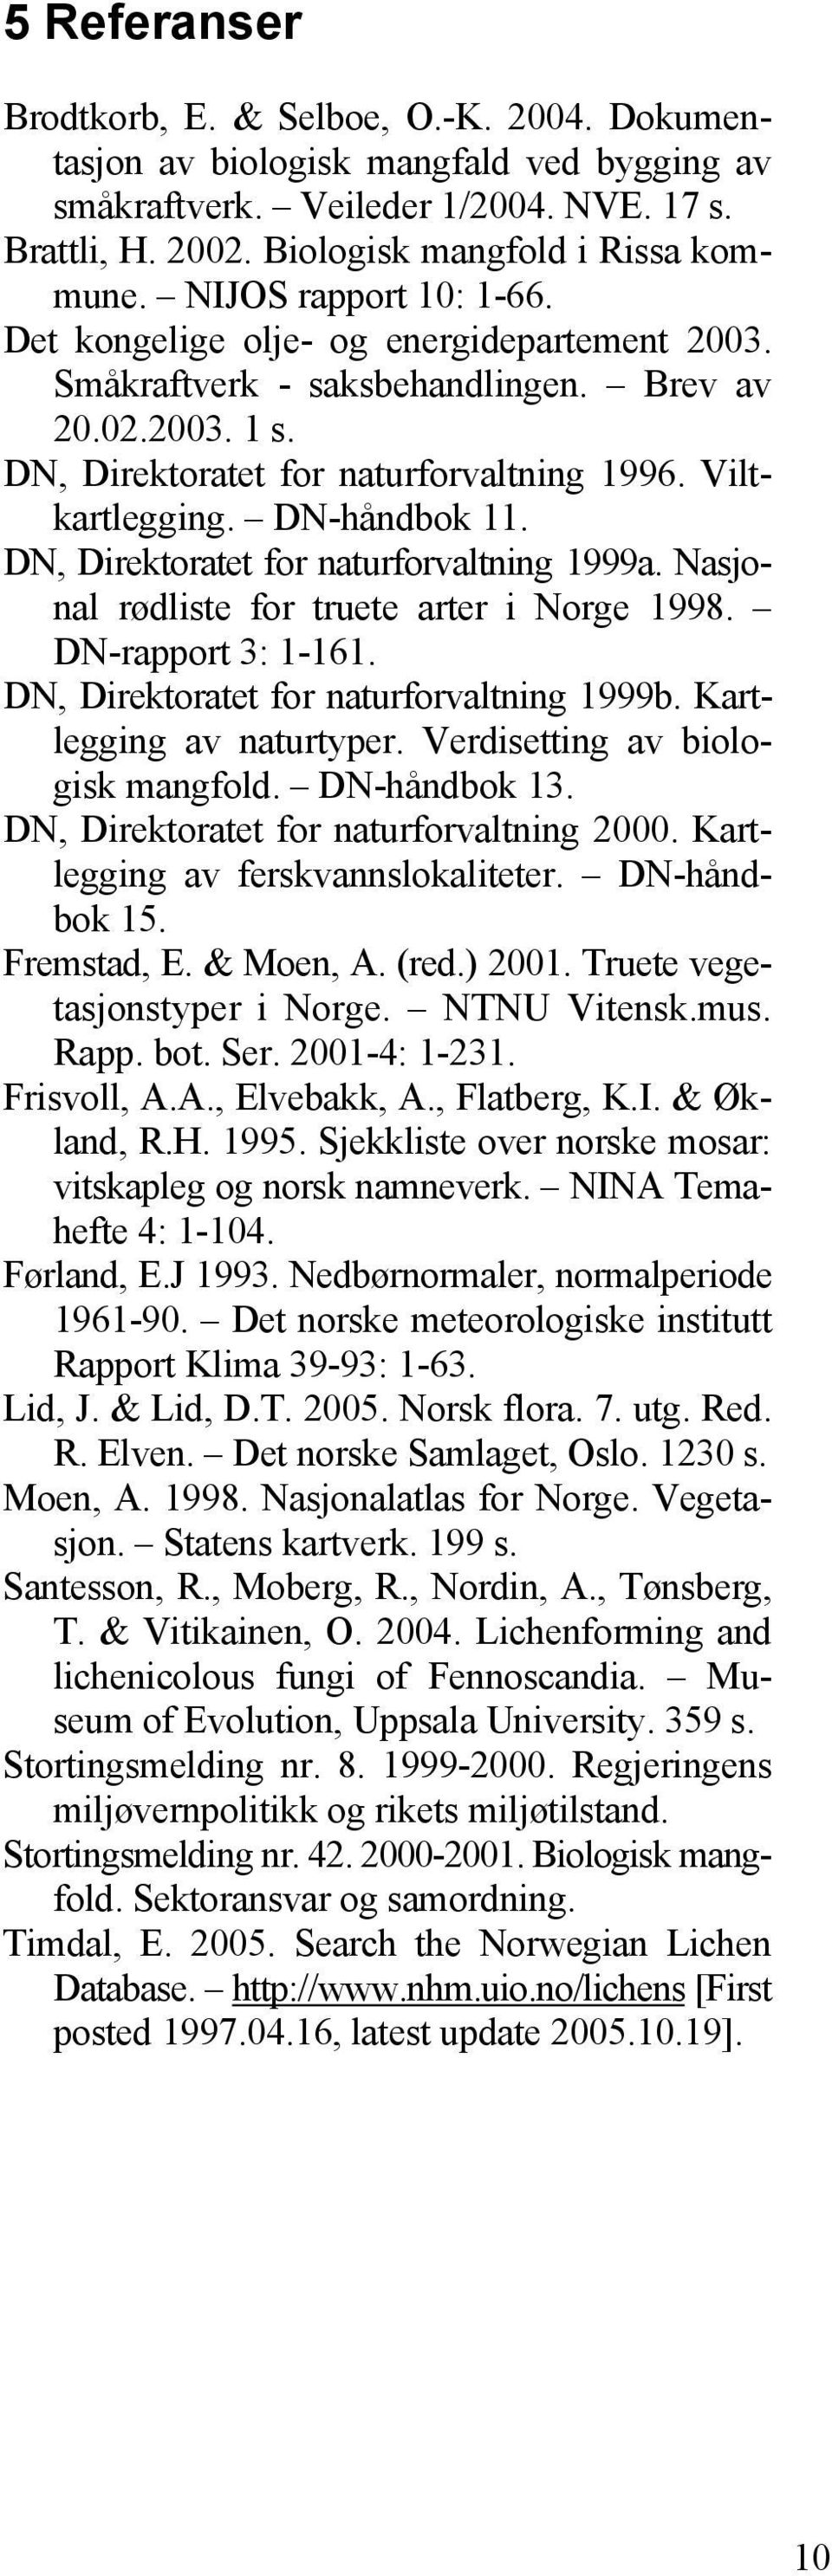 DN-håndbok 11. DN, Direktoratet for naturforvaltning 1999a. Nasjonal rødliste for truete arter i Norge 1998. DN-rapport 3: 1-161. DN, Direktoratet for naturforvaltning 1999b.